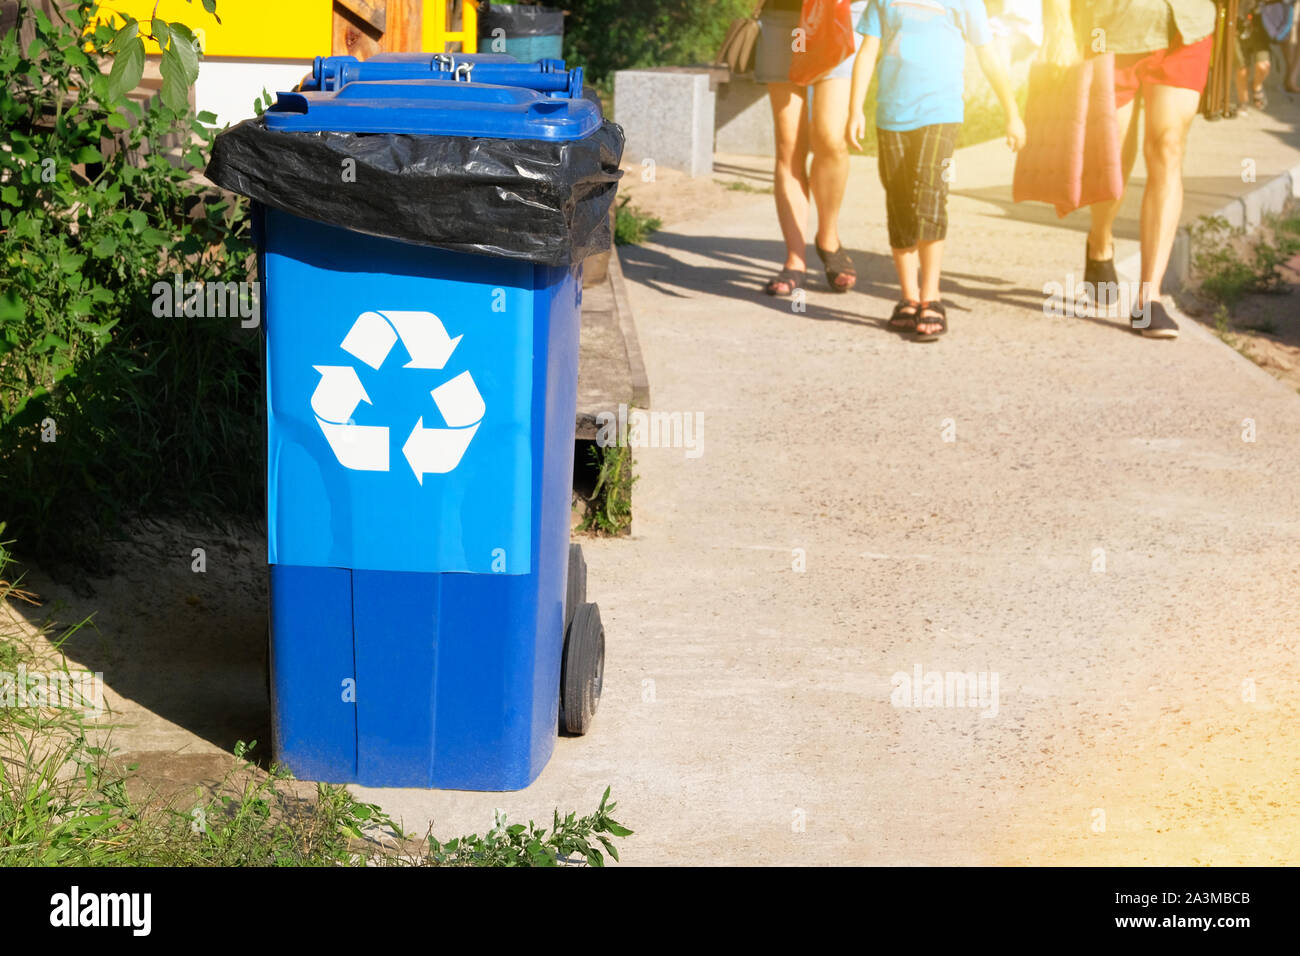 Garbage Collection. Recycling von Abfällen Konzept. Den blauen Container für die weitere Verarbeitung von Müll. Sonnenschein. Stockfoto